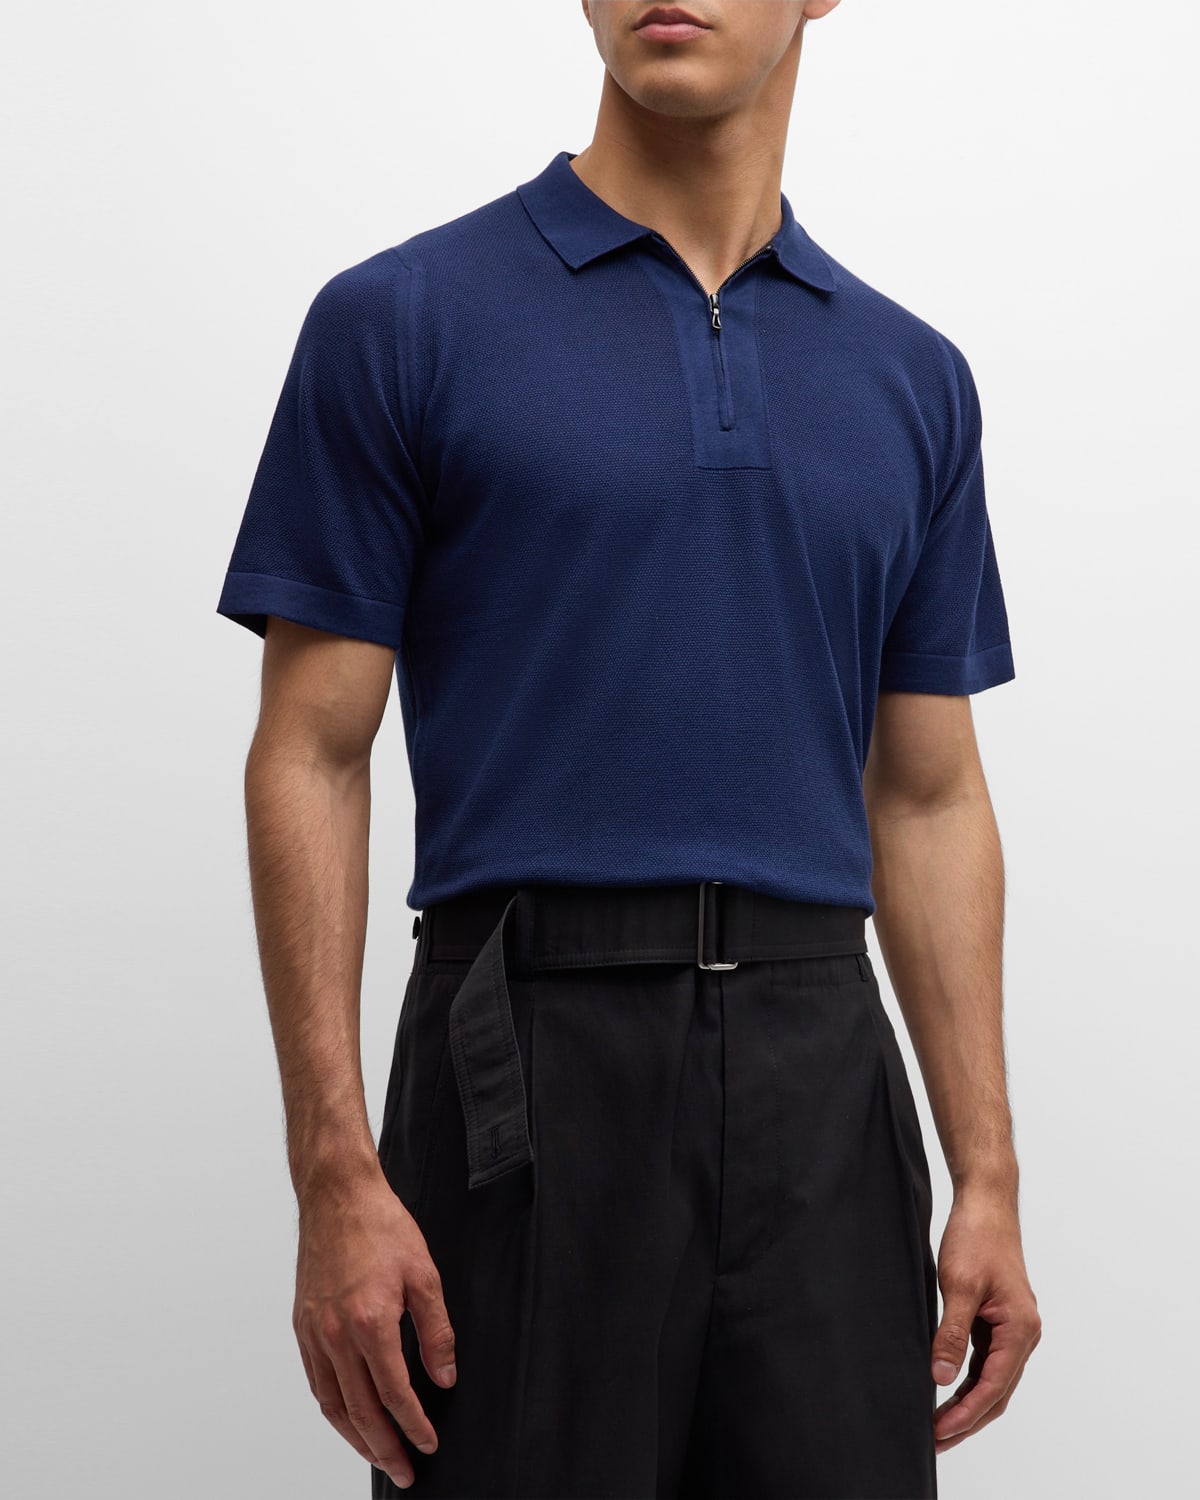 Men's Sandbanks Pique Quarter-Zip Polo Shirt